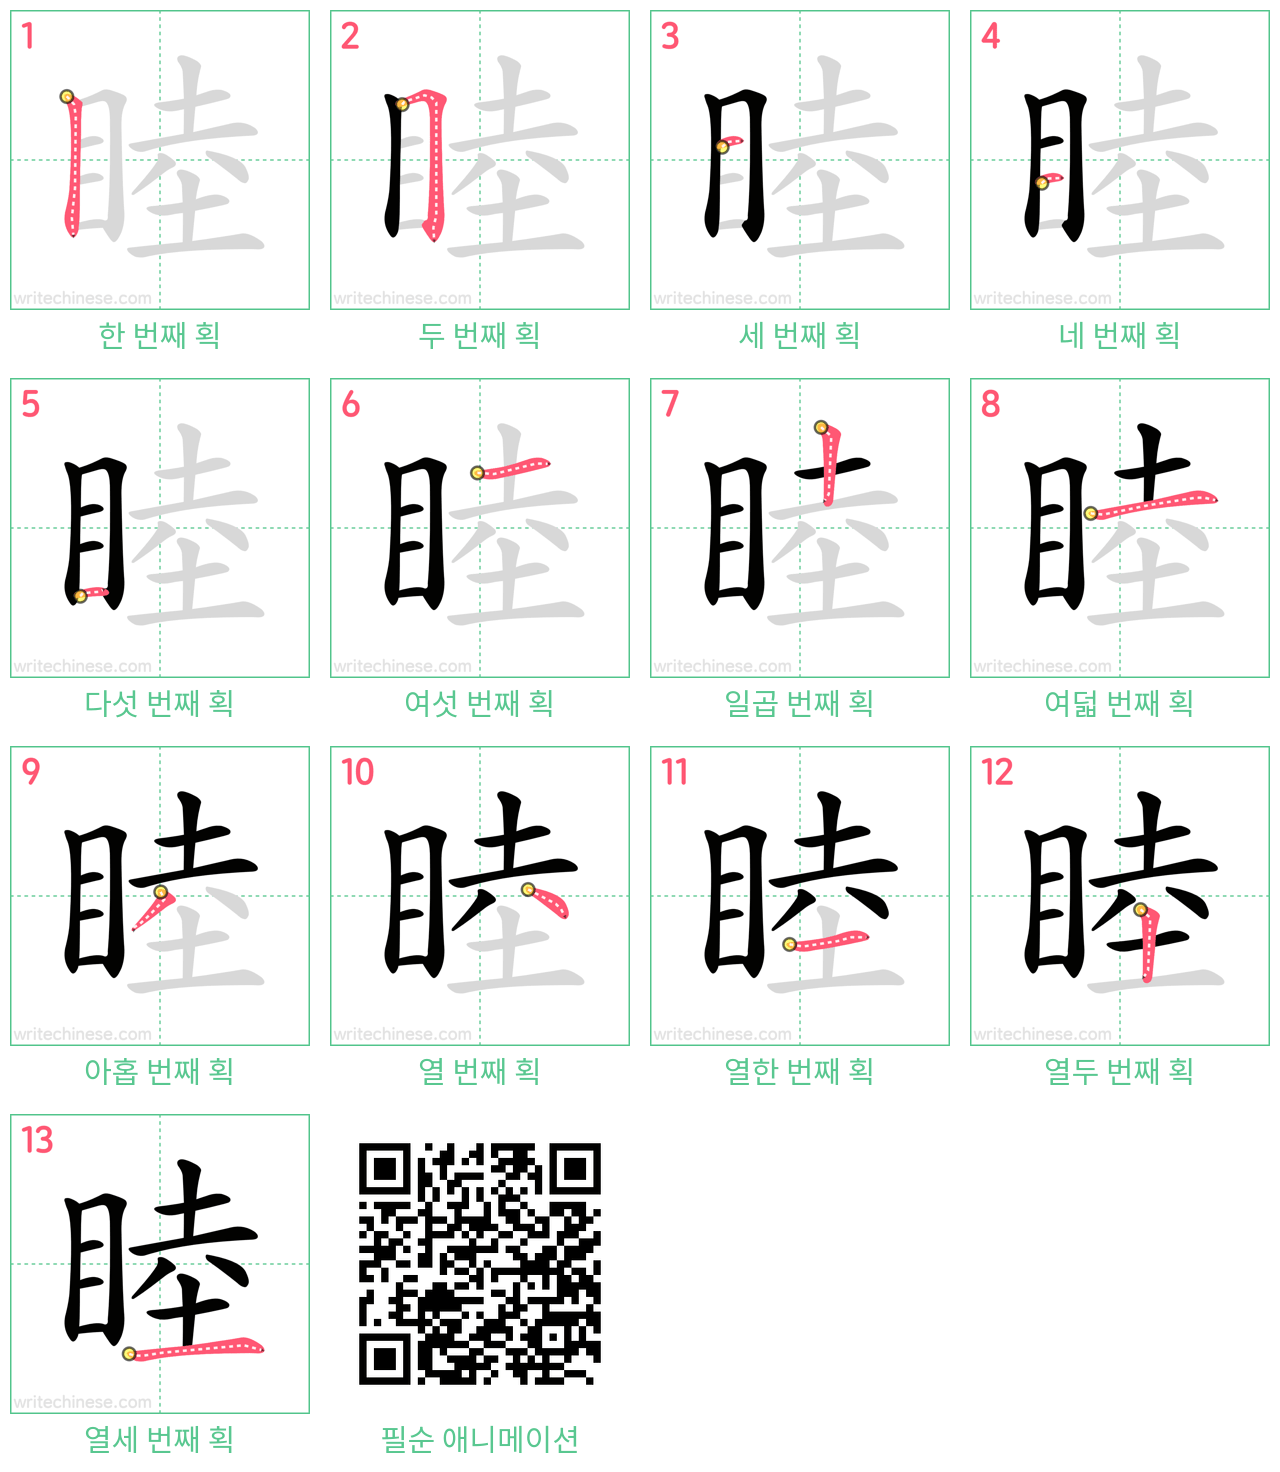 睦 step-by-step stroke order diagrams